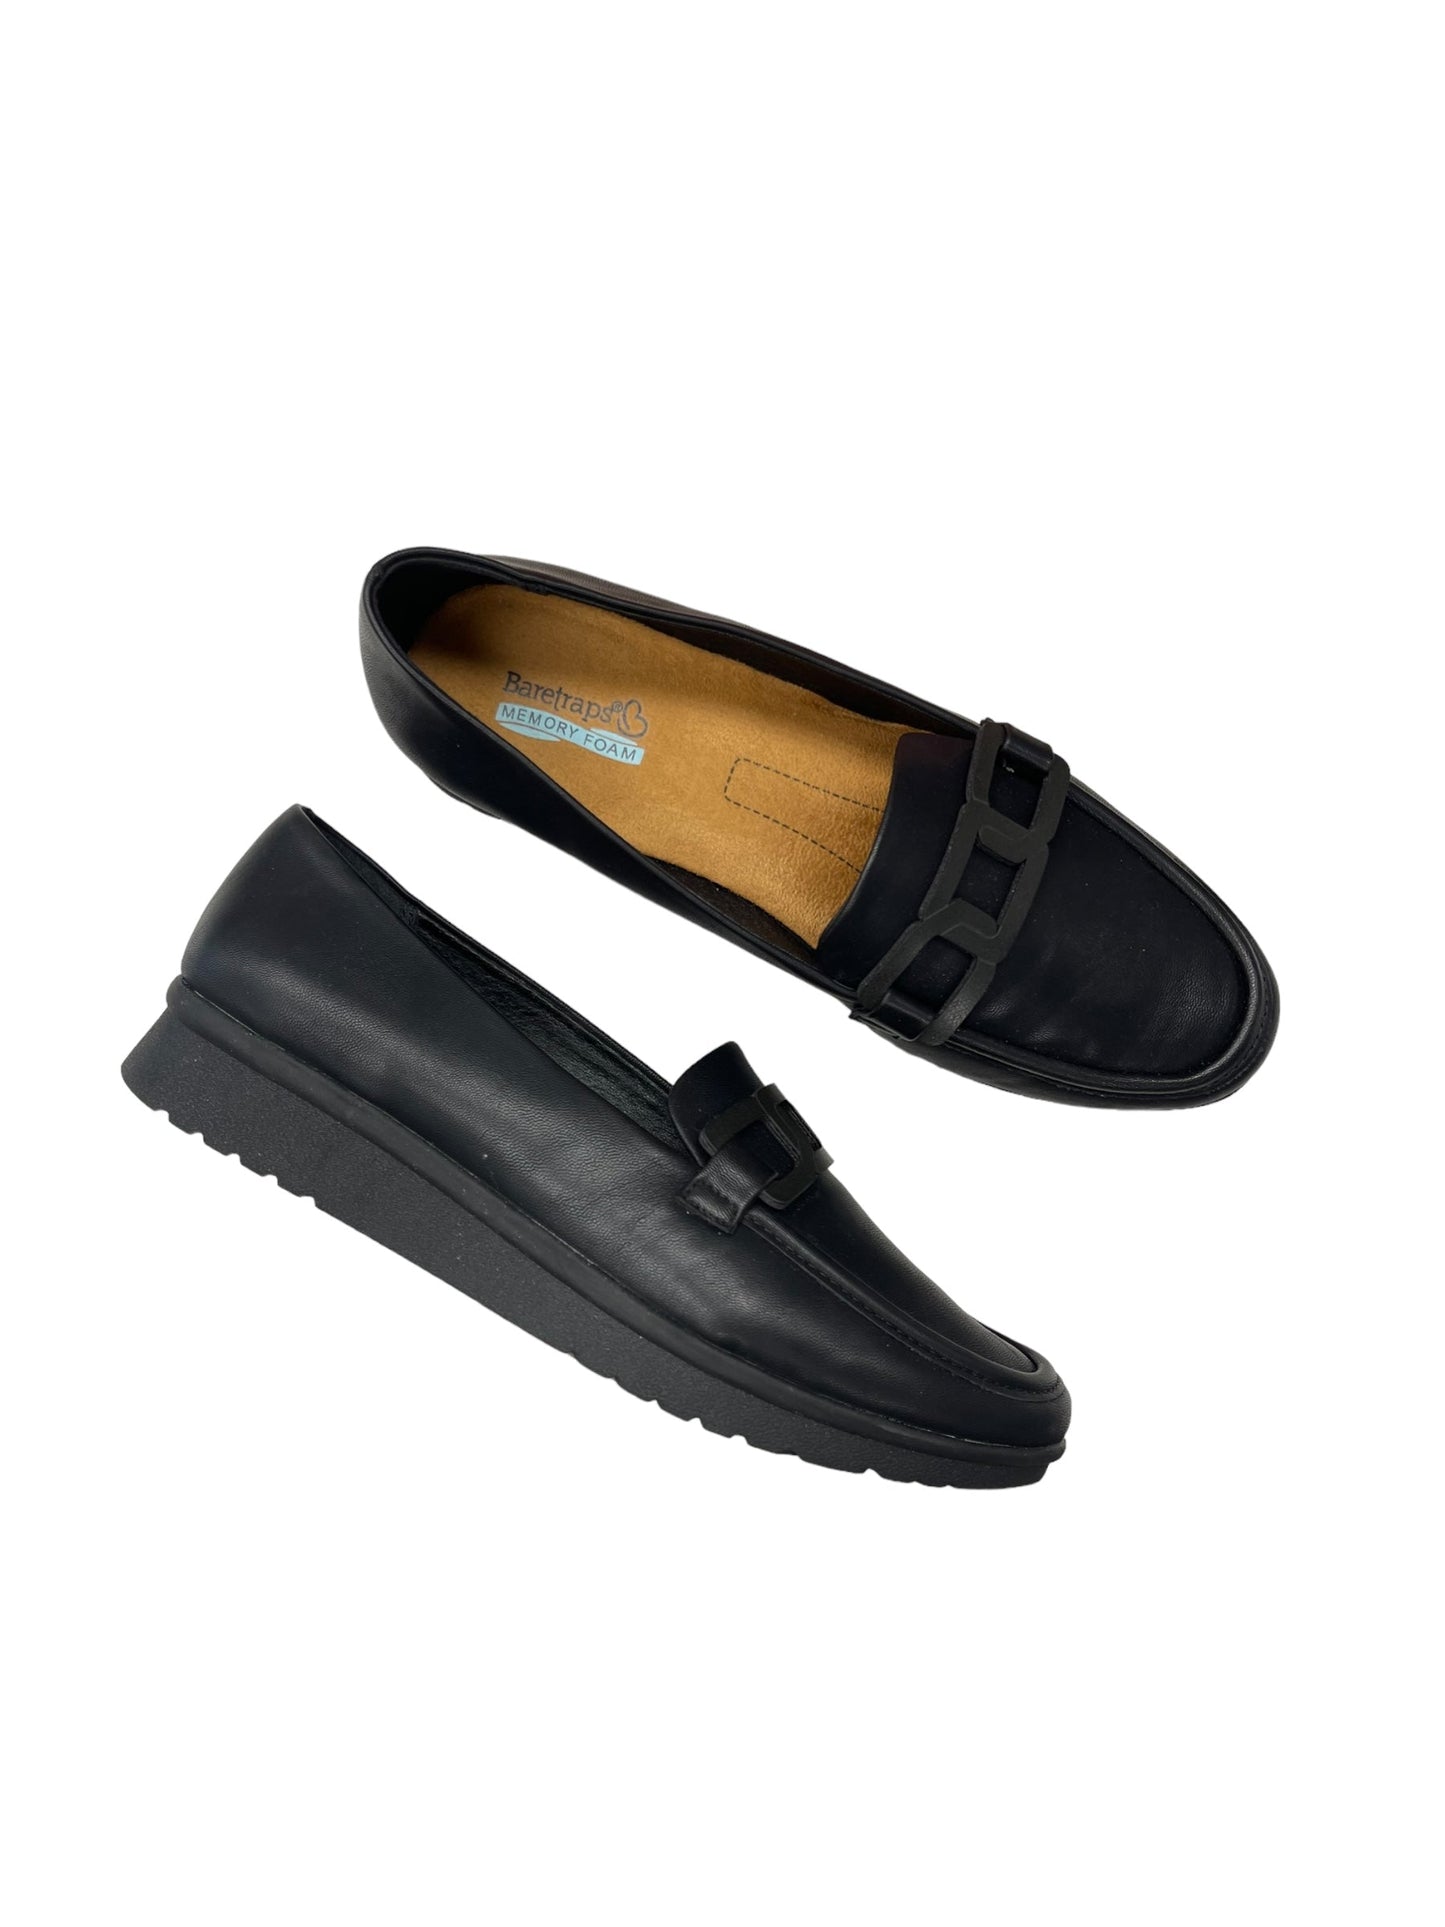 Black Shoes Flats Bare Traps, Size 9